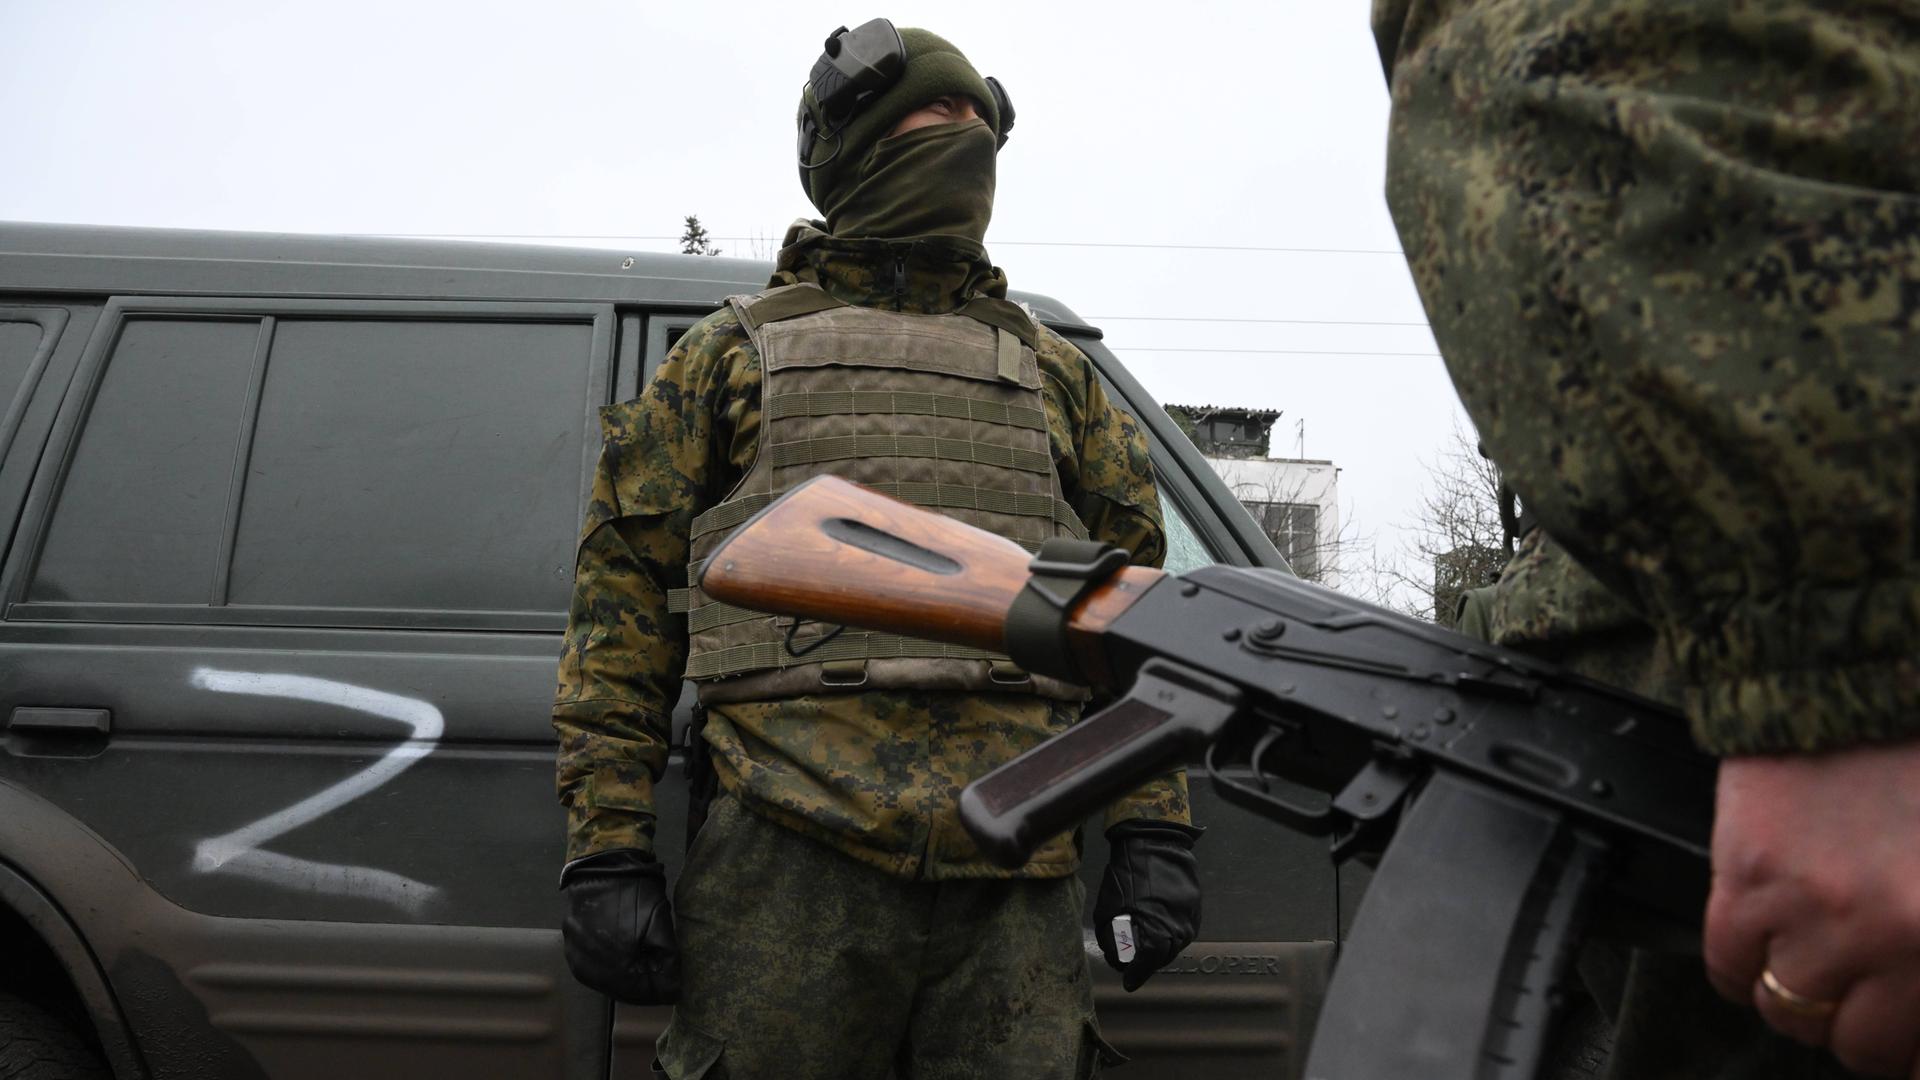 Russisches Militärfahrzeug mit dem Buchstaben "Z". Zwei uniformierte Soldaten stehen neben dem Fahrzeug.